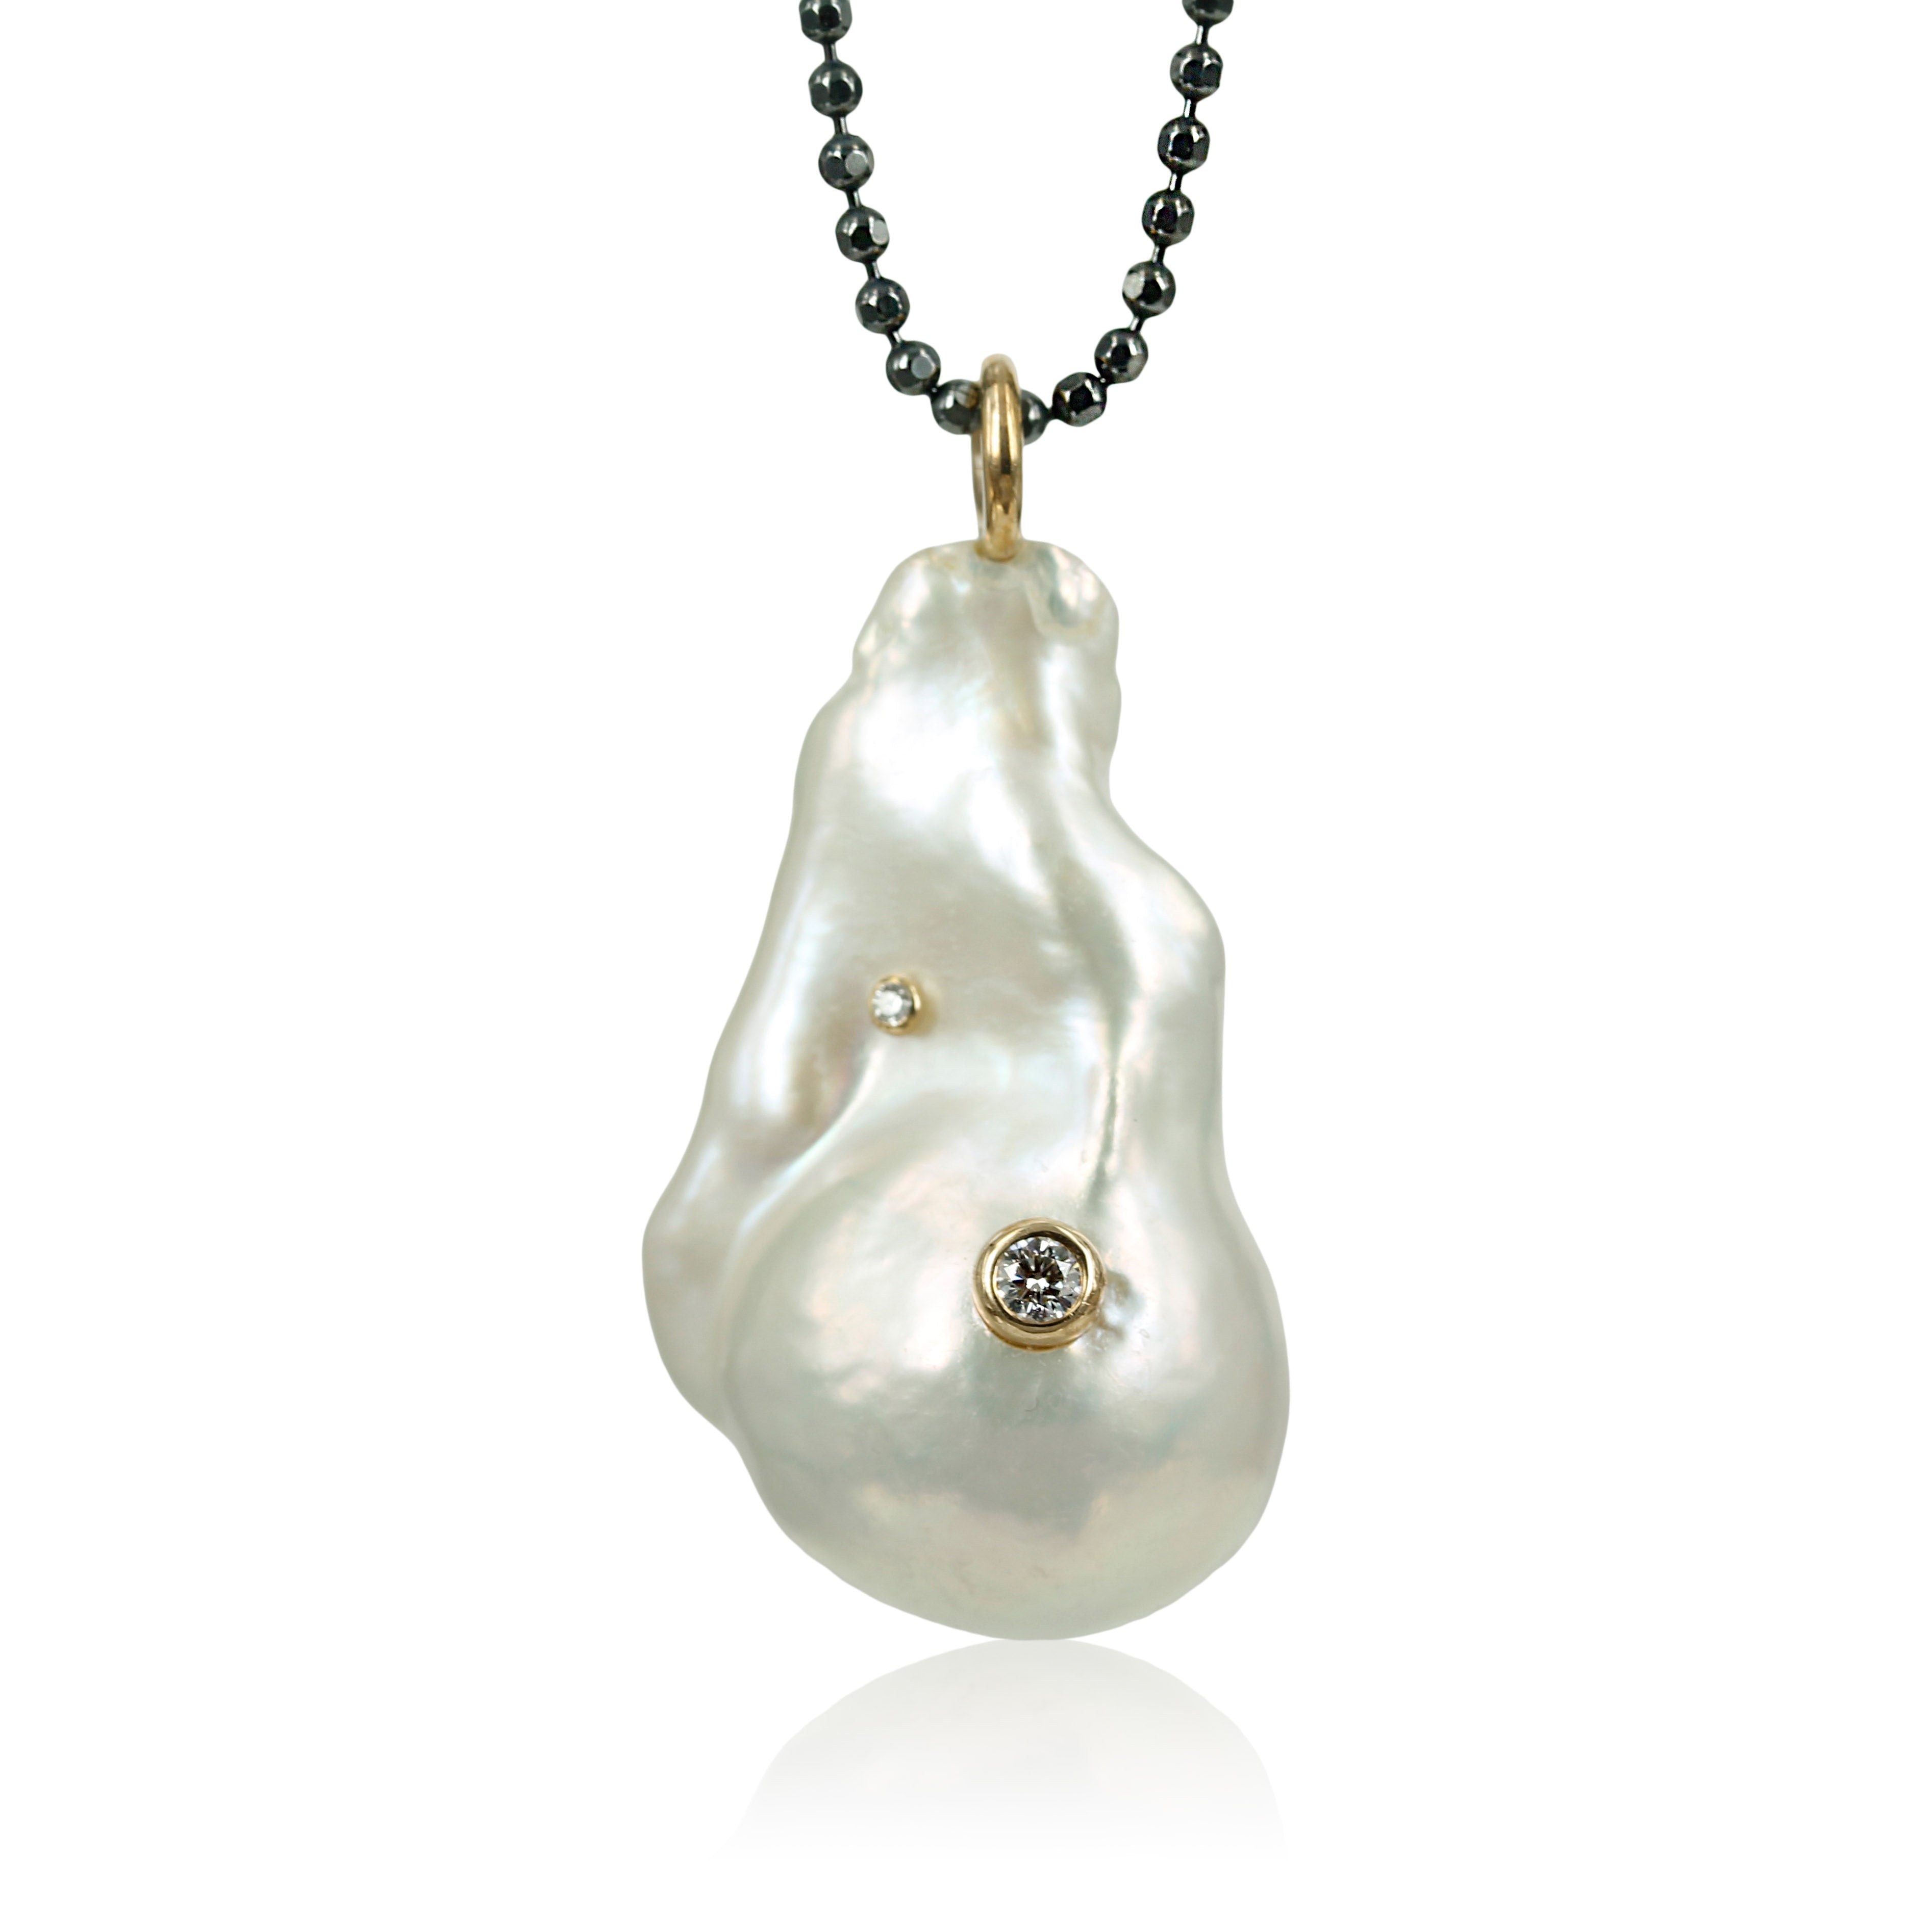 Smuk og unik perle, med bløde bølger - påsat fin hvid diamant 0,01 ct. samt 0.10 ct. tw vvs     Perlen måler 21,9 x 35,6 mm. fra top til bund ca. 41,3 mm.